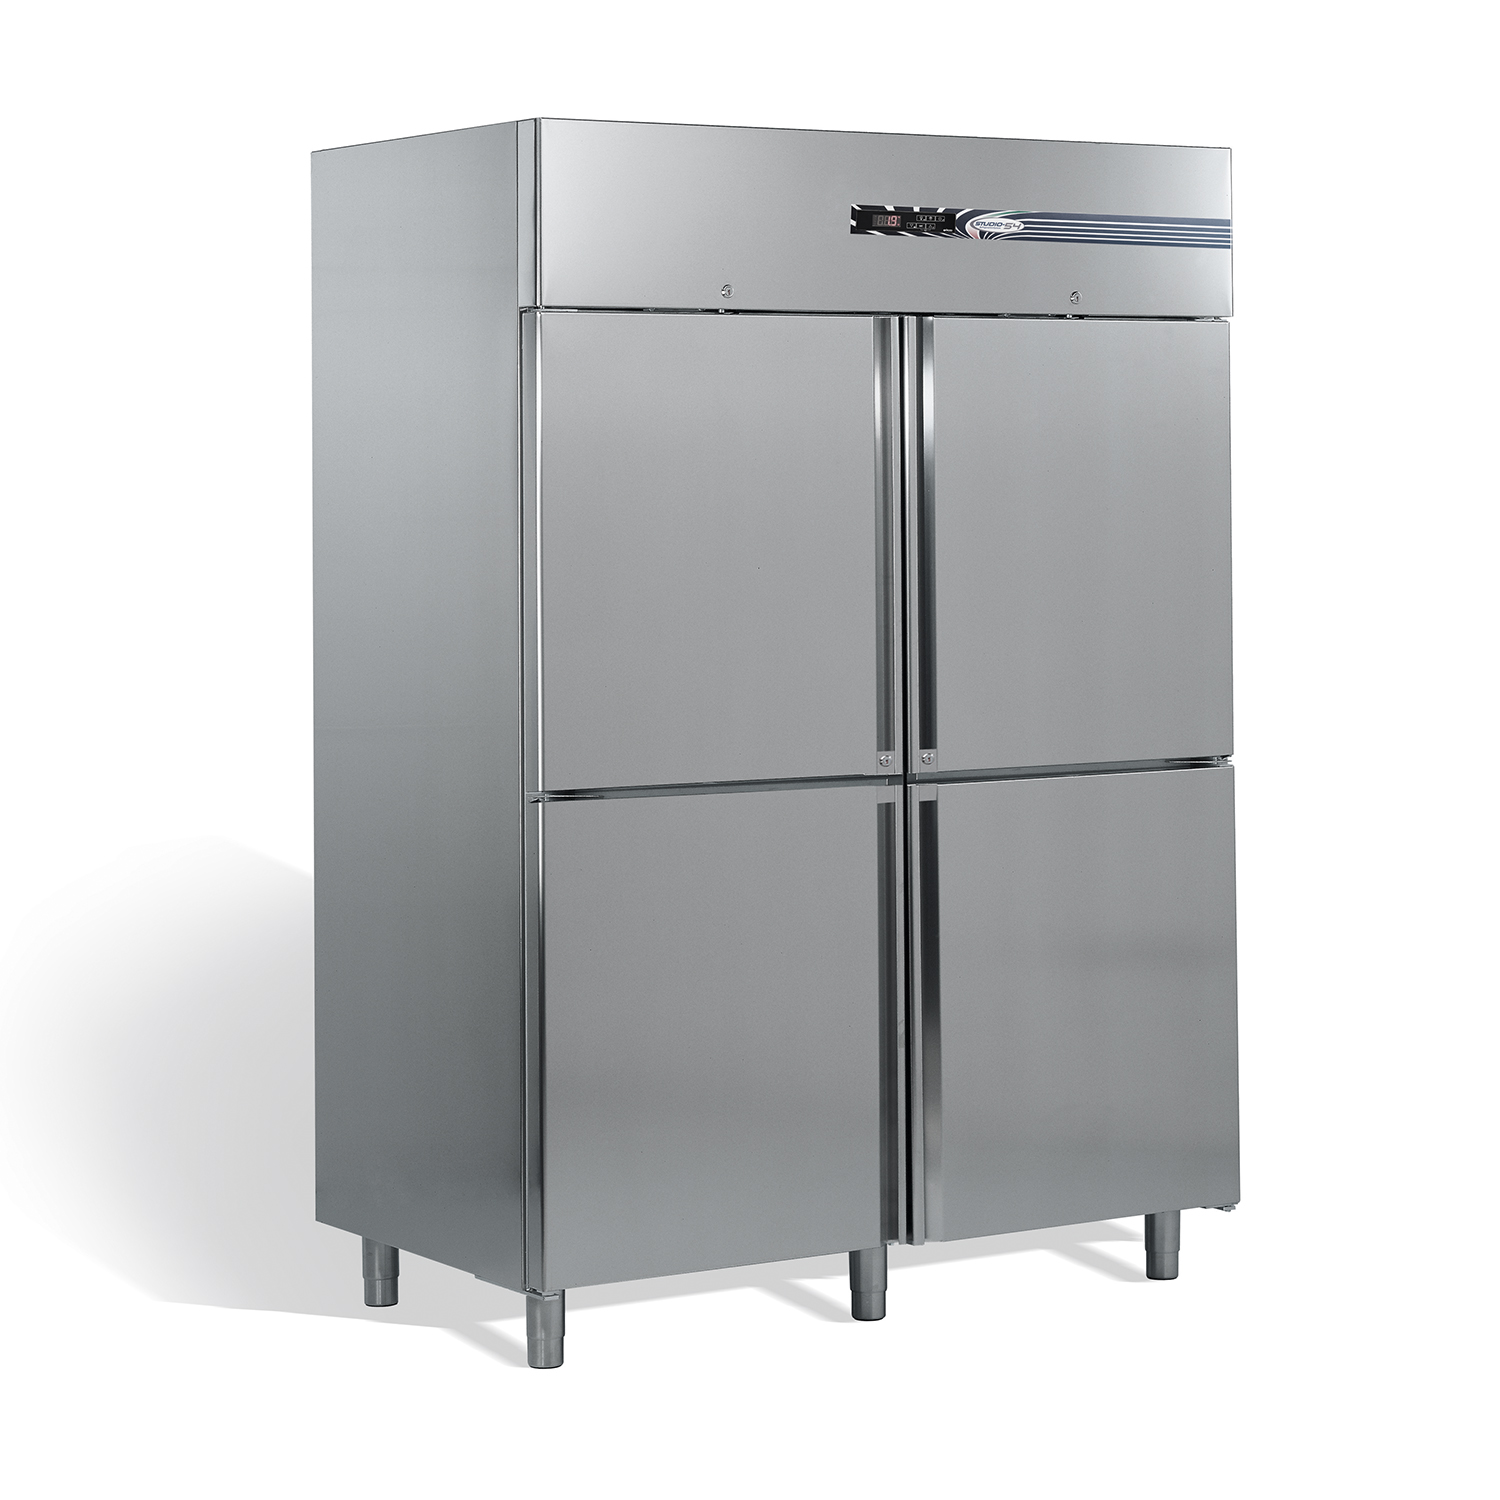 Gastro-Tiefkühlschrank viertürig OASIS TOP LINE 1400 Liter